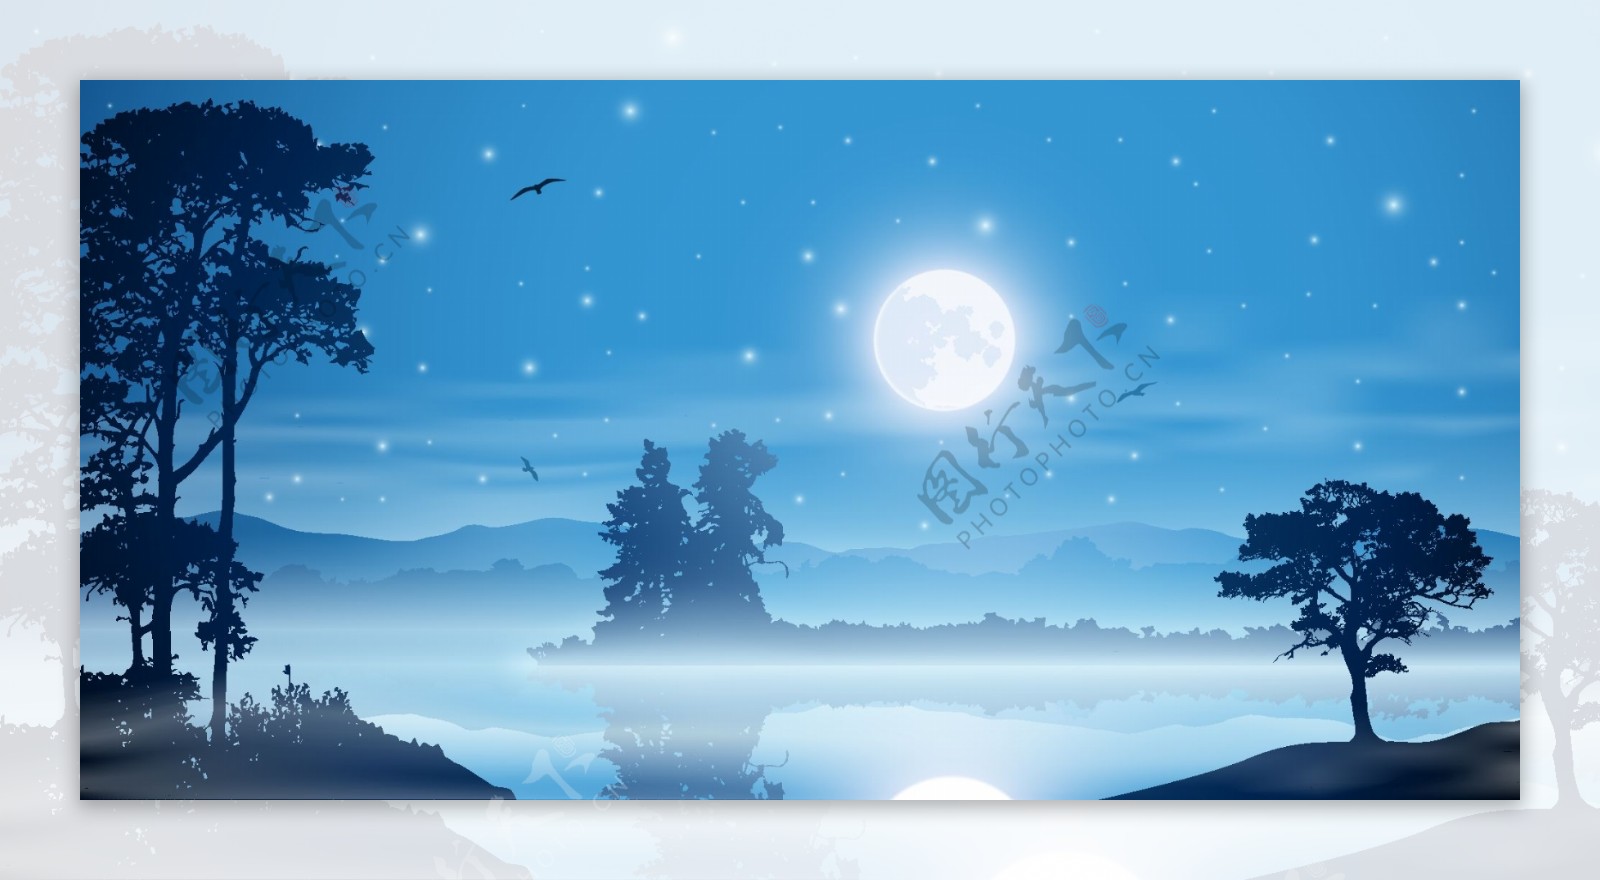 浪漫的湖面夜景插画